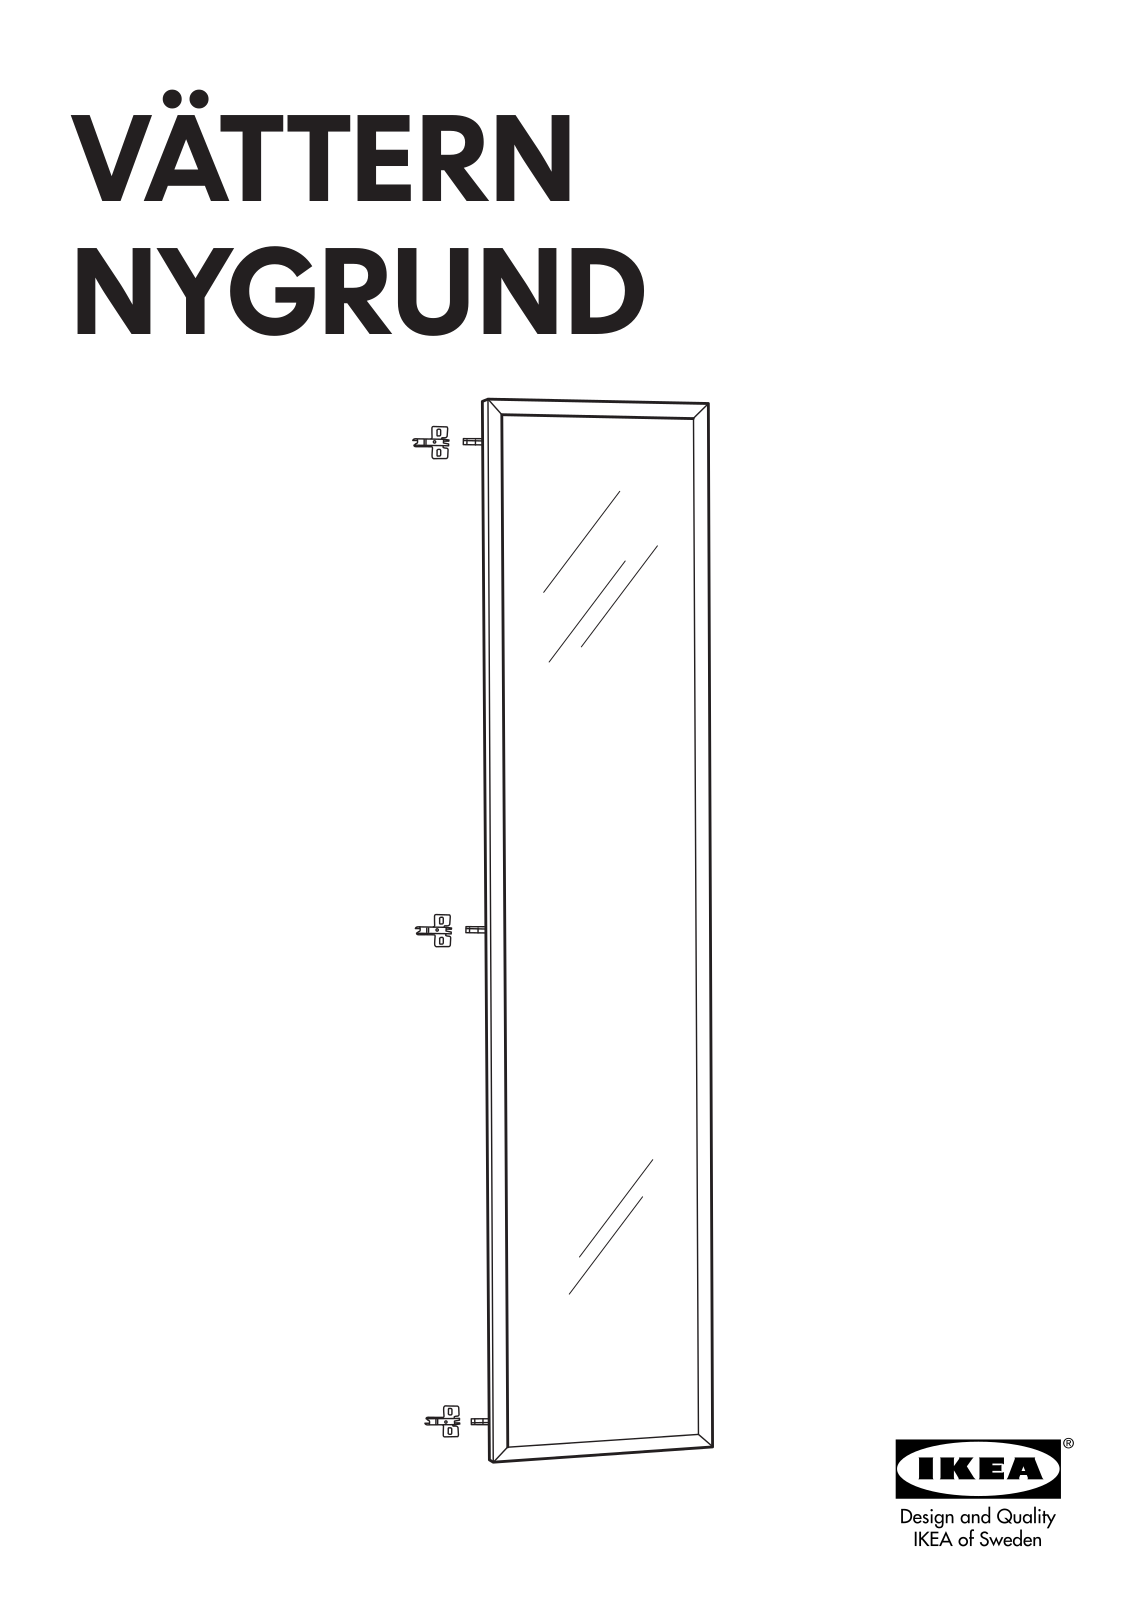 IKEA VÄTTERN NYGRUND DOOR15X70